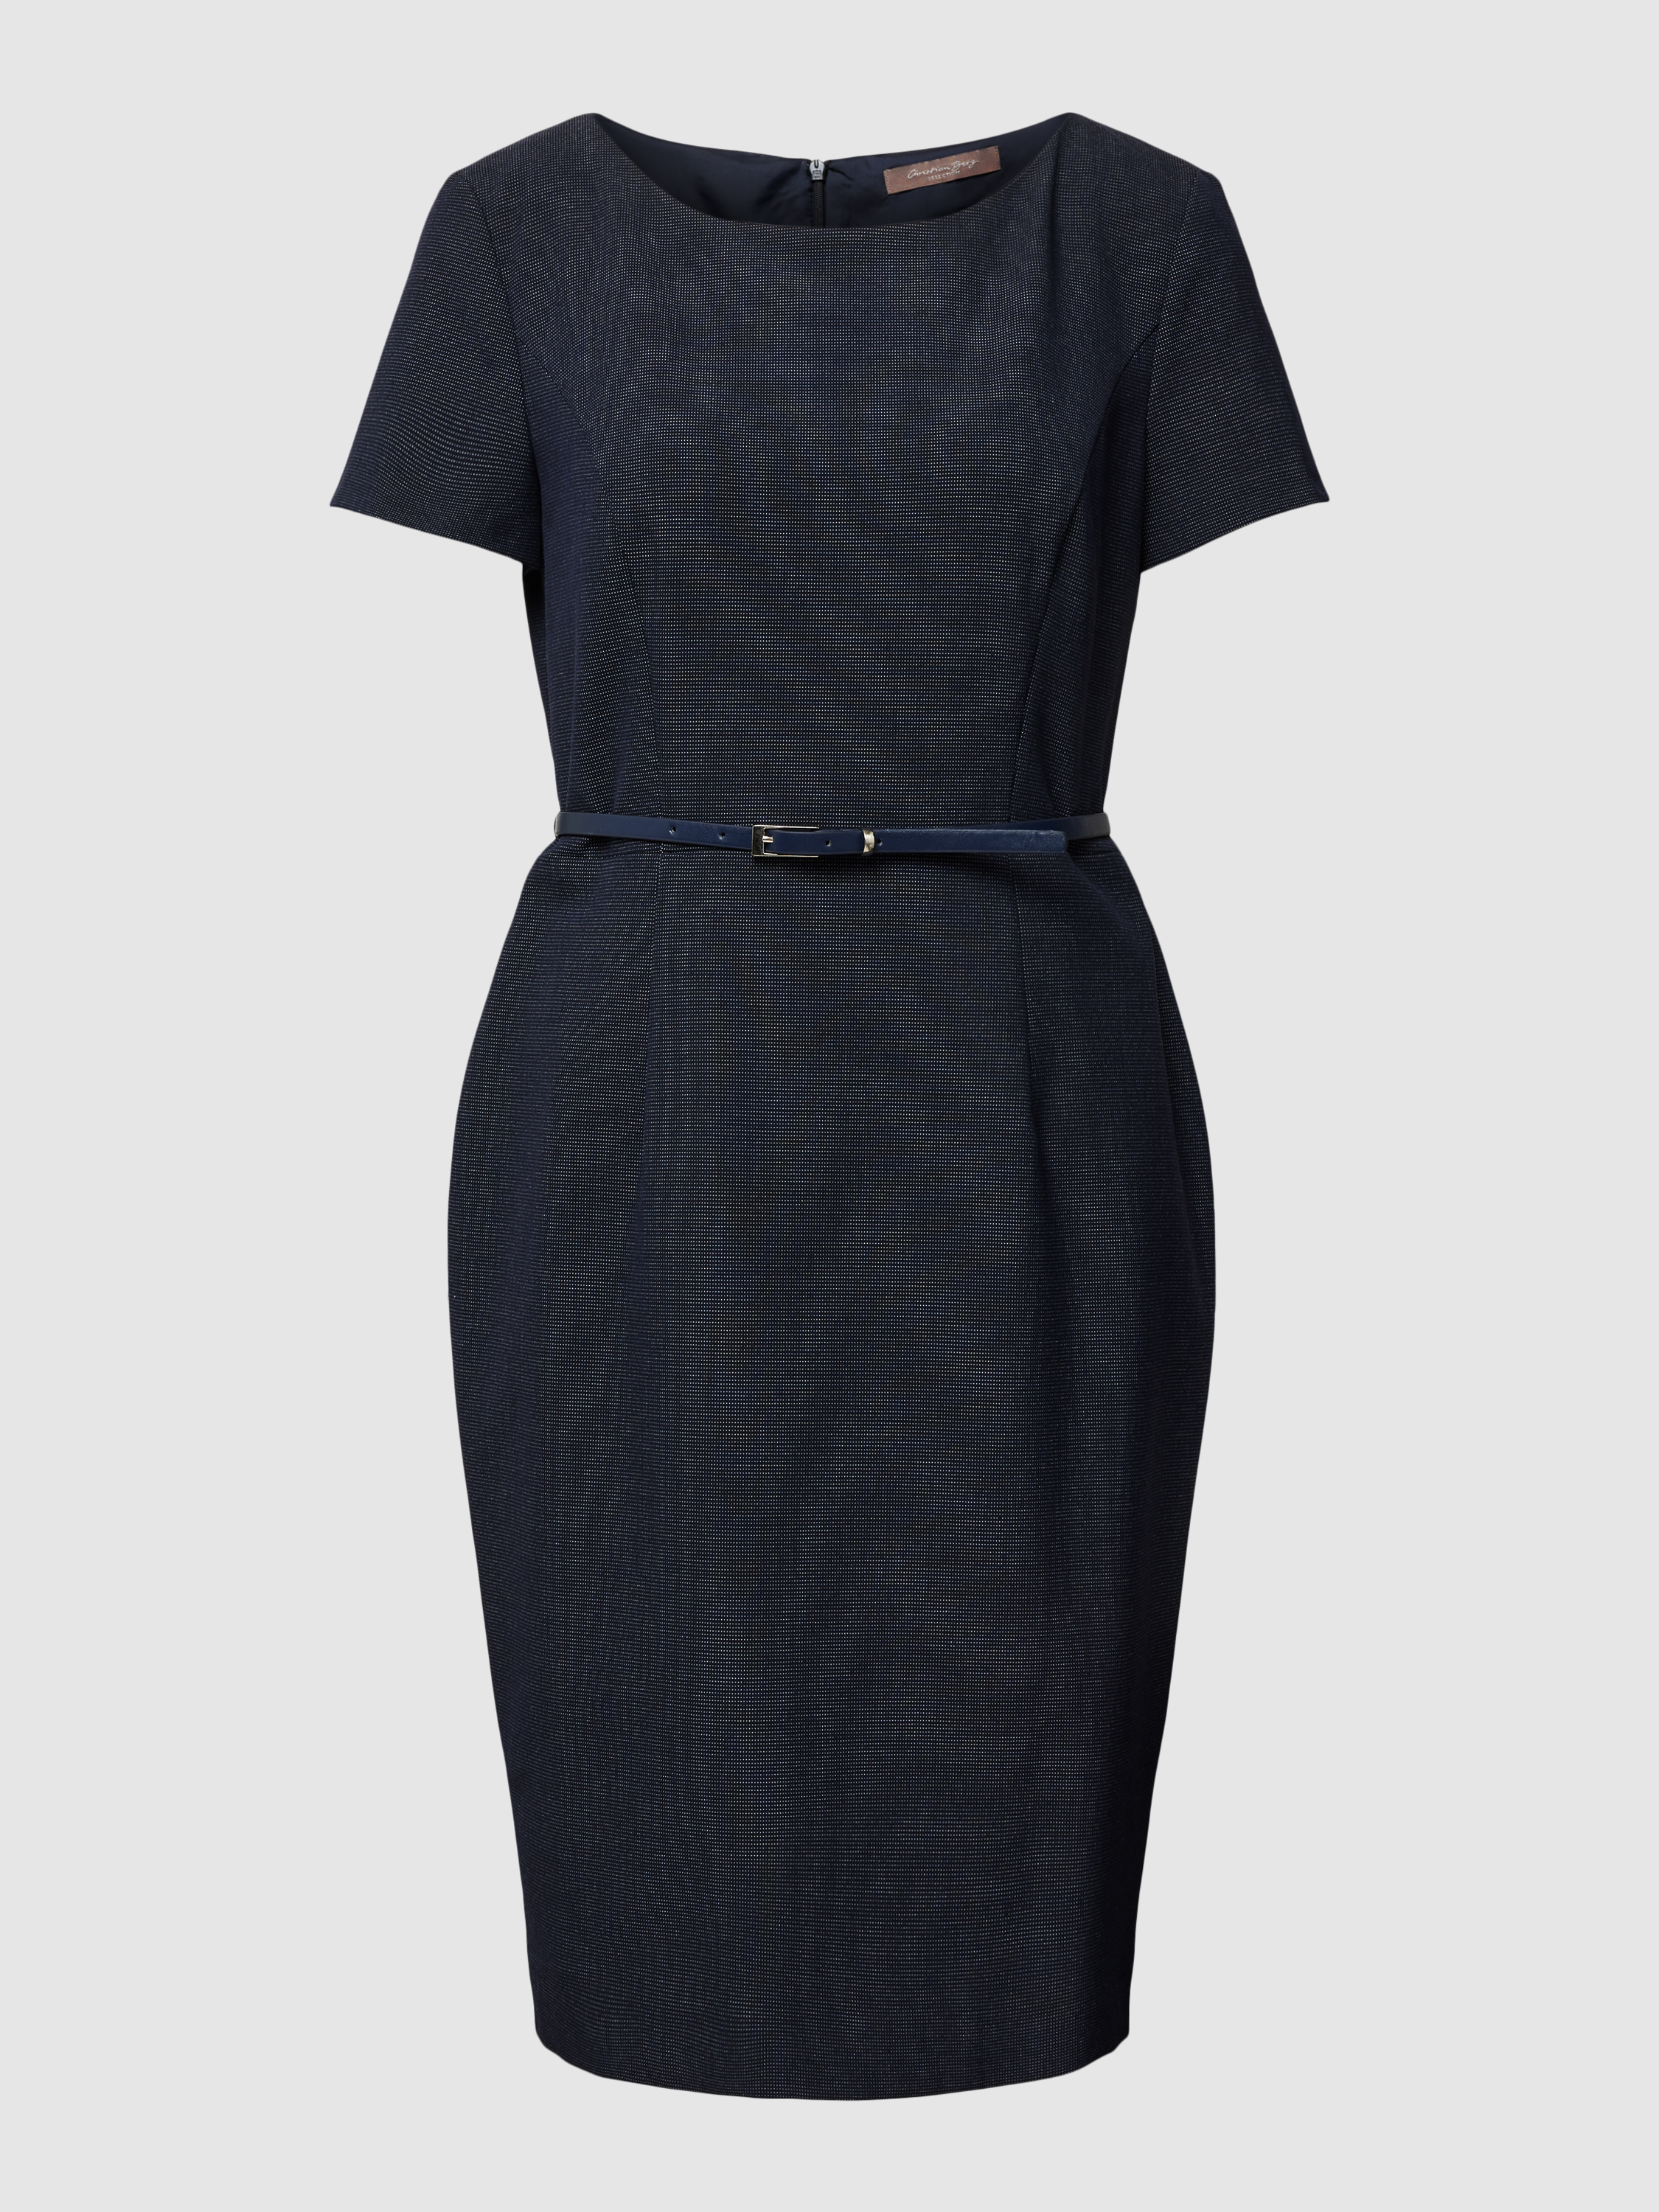 Платье женское Christian Berg Woman Selection 1826109 синее 44 (доставка из-за рубежа)